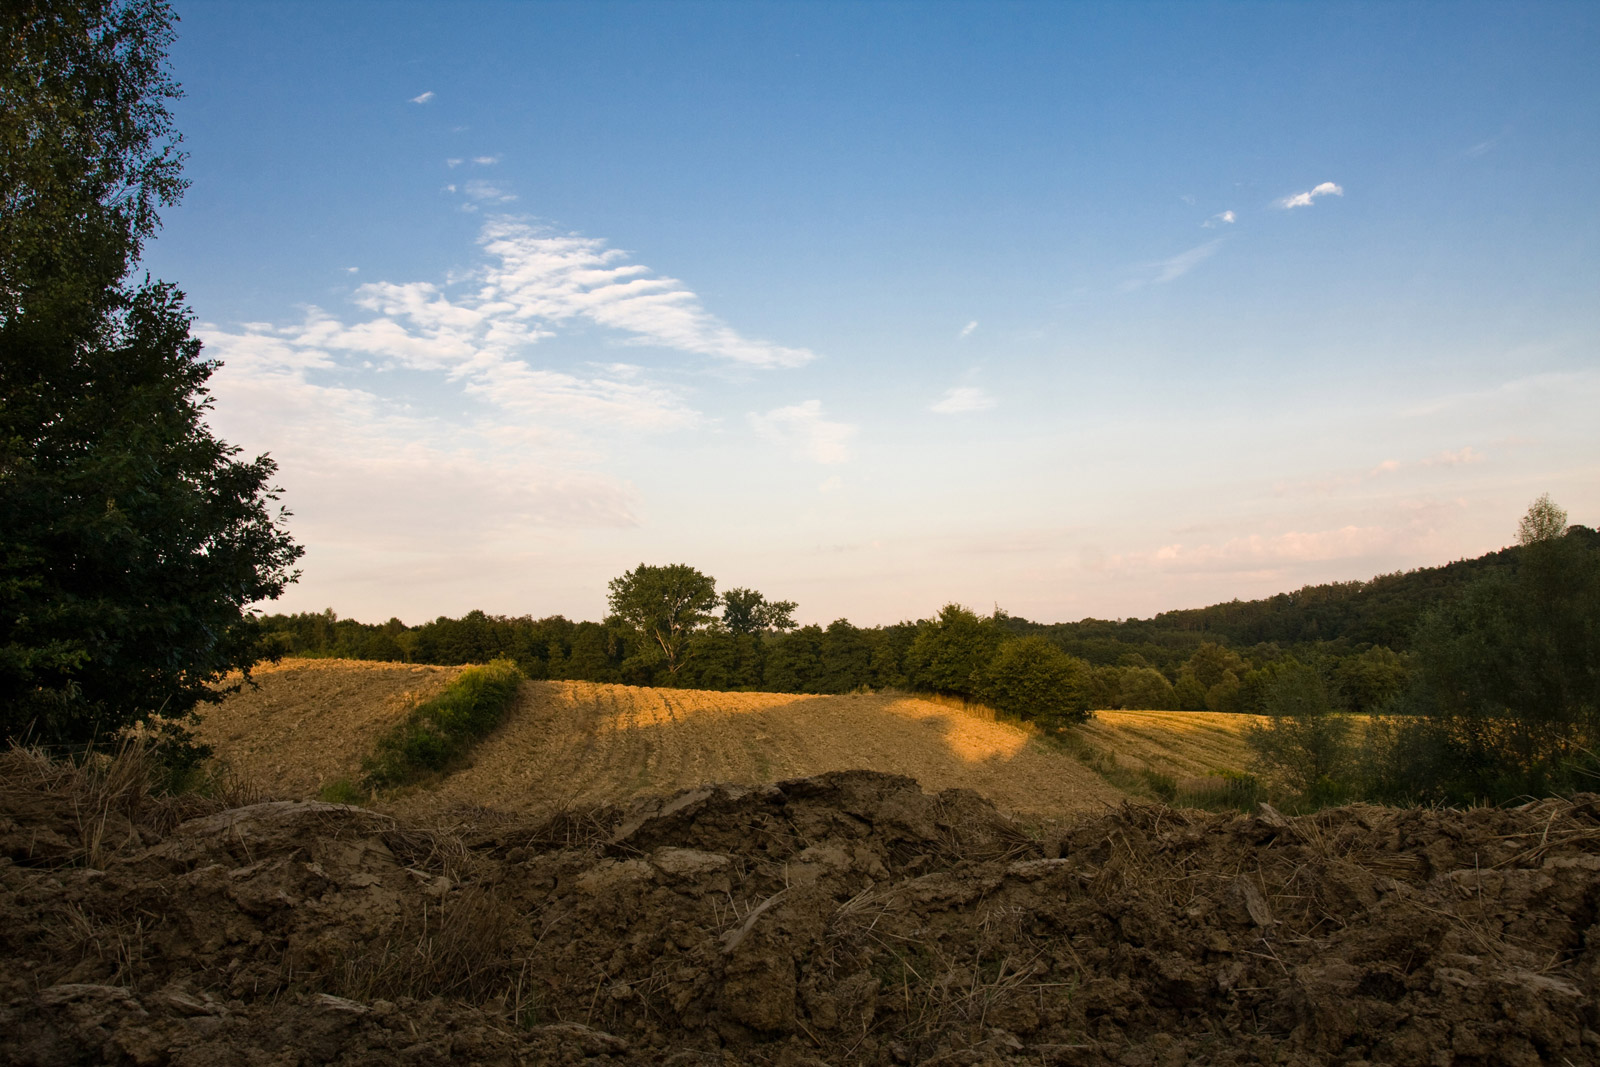 Kulerzów w gmine Mogilany - zaorane pola z bruzdami oddzielone miedzą latem po żniwach